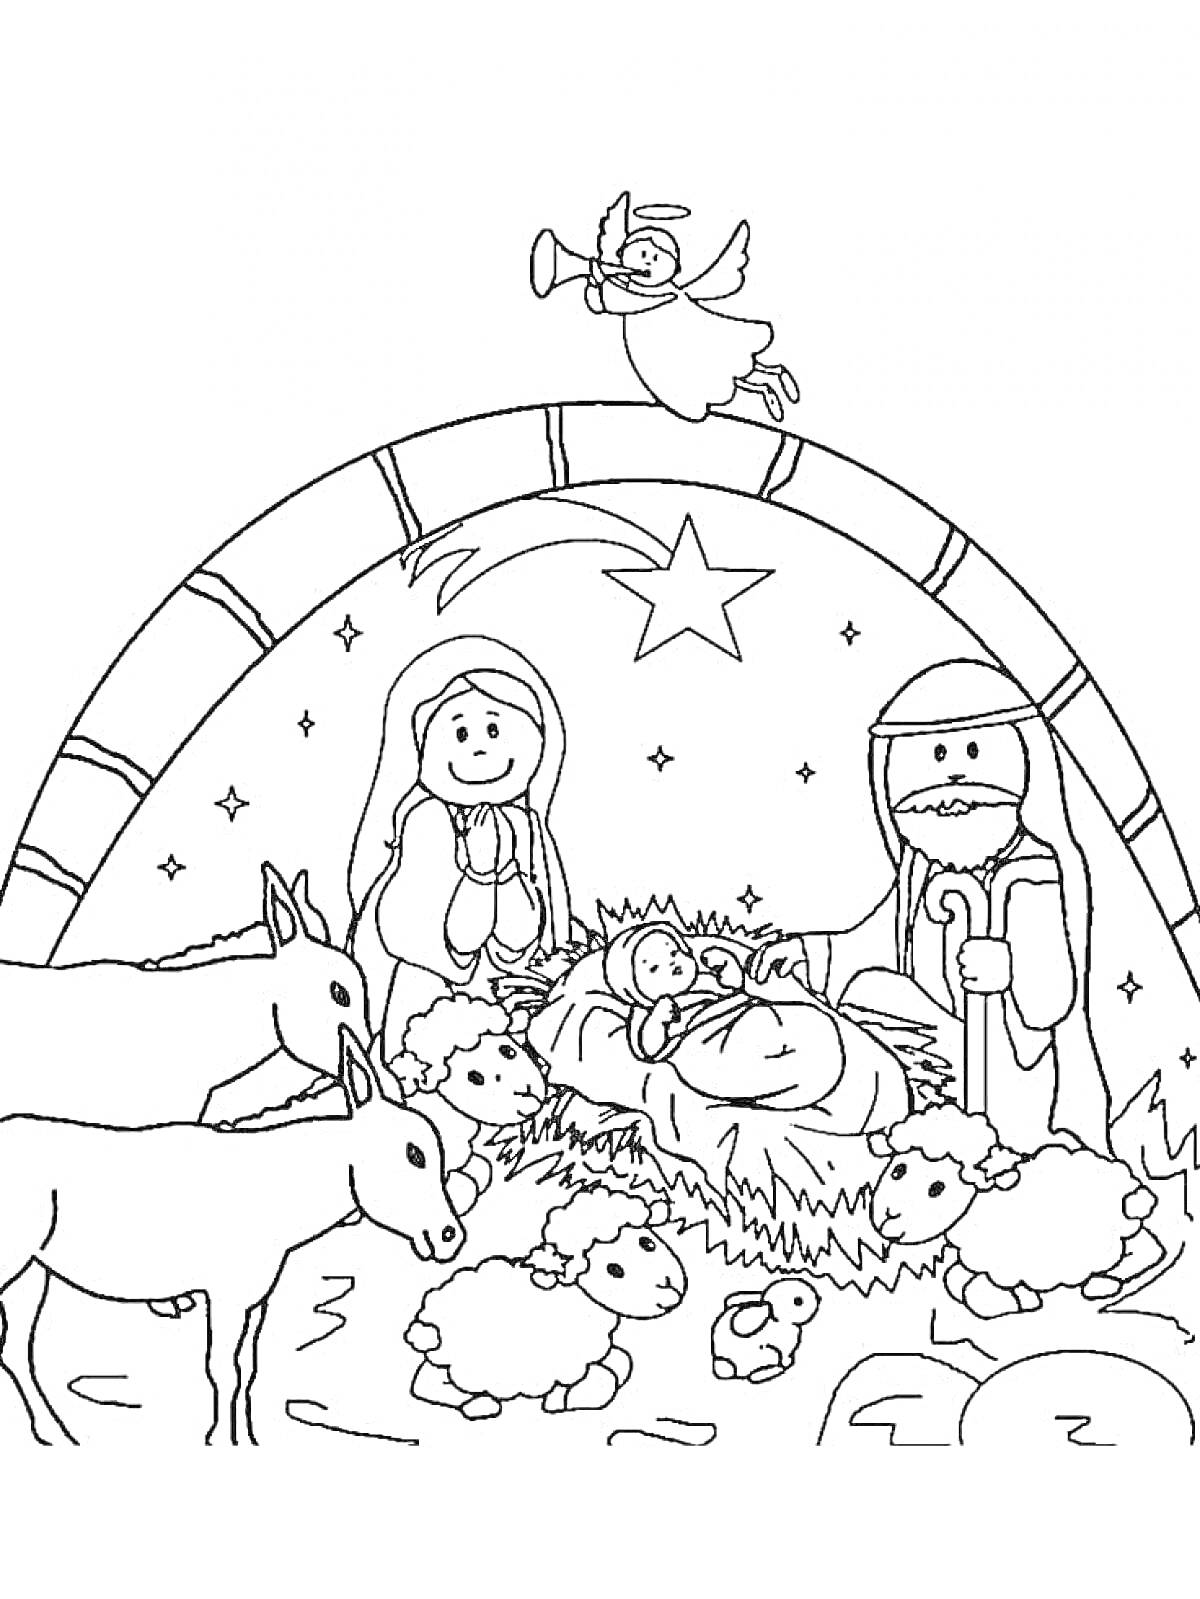 Раскраска Рождество Христово — младенец Иисус в яслях с Марией и Иосифом, овцы, ослы, ангел и Вифлеемская звезда